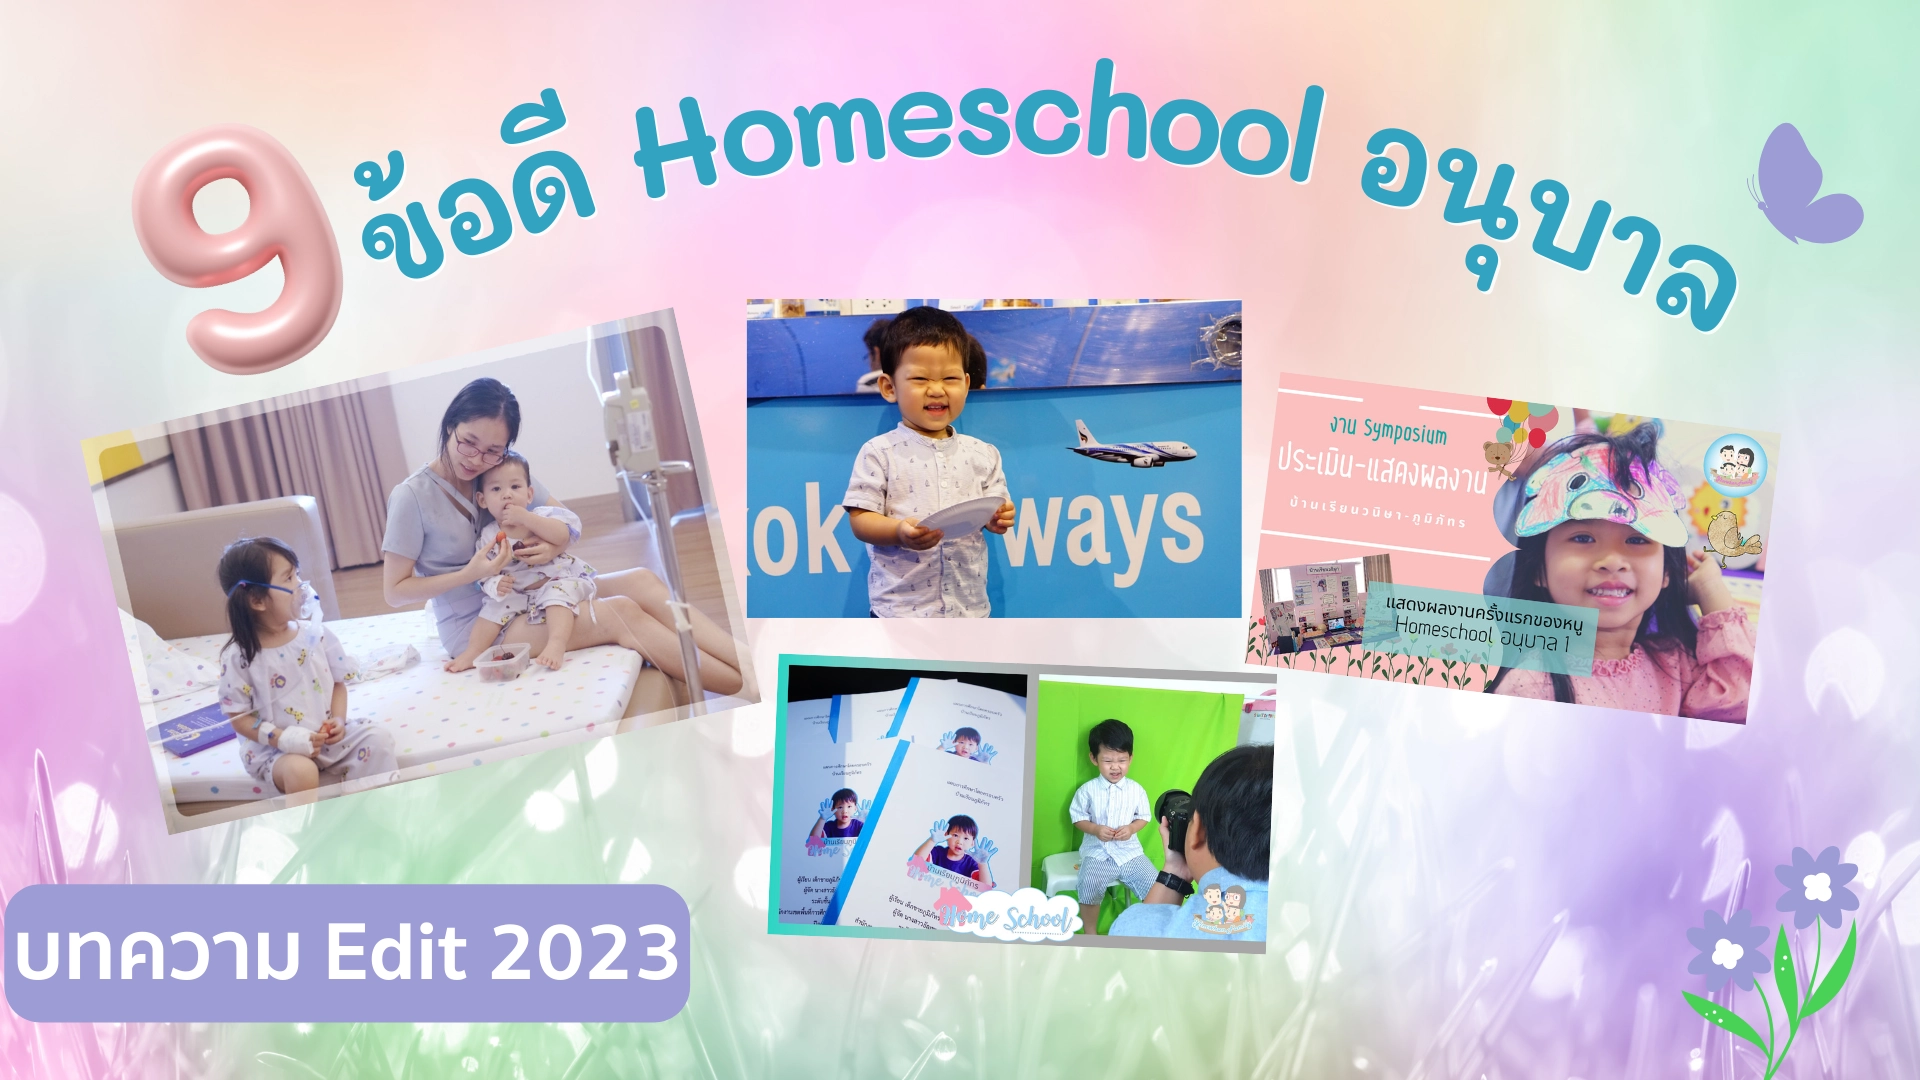 Homeschool - Books - Bilingual - Phonics